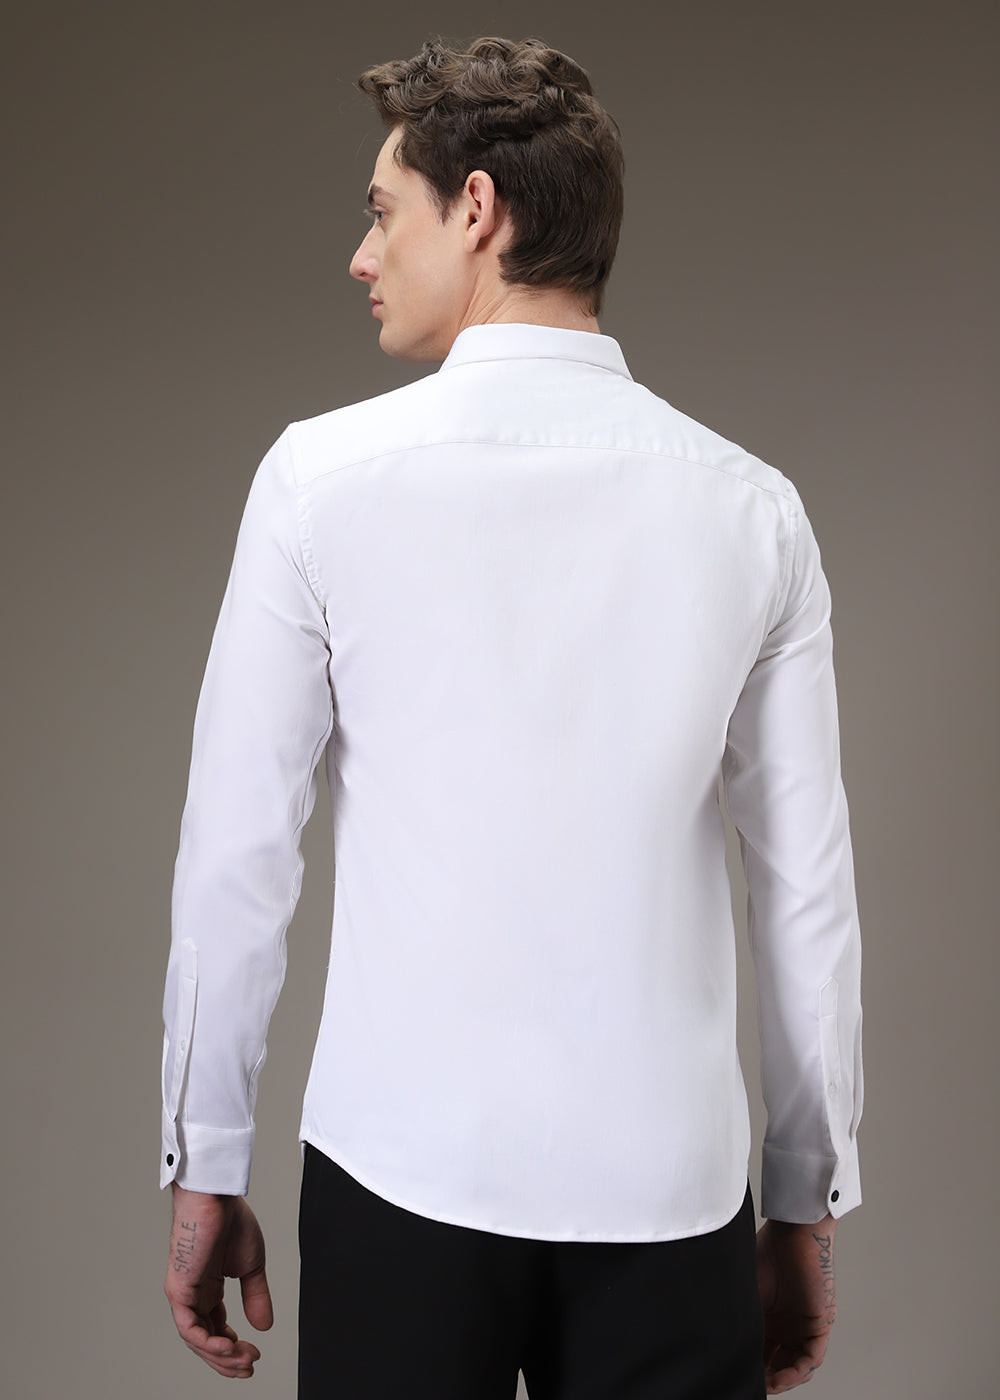 Embellished White Shirt